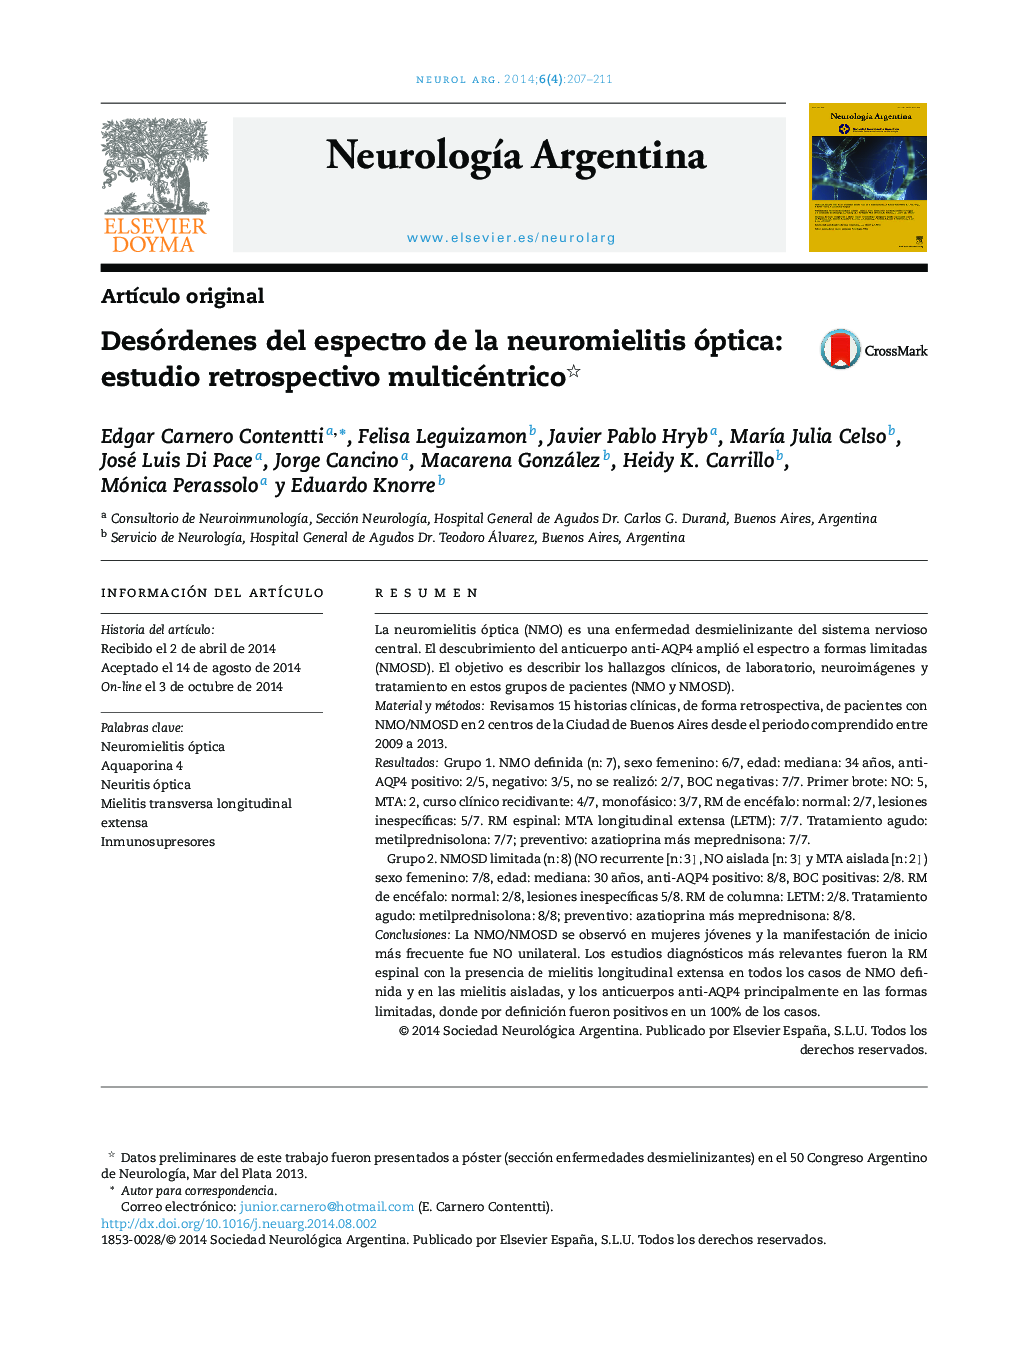 Desórdenes del espectro de la neuromielitis óptica: estudio retrospectivo multicéntrico 